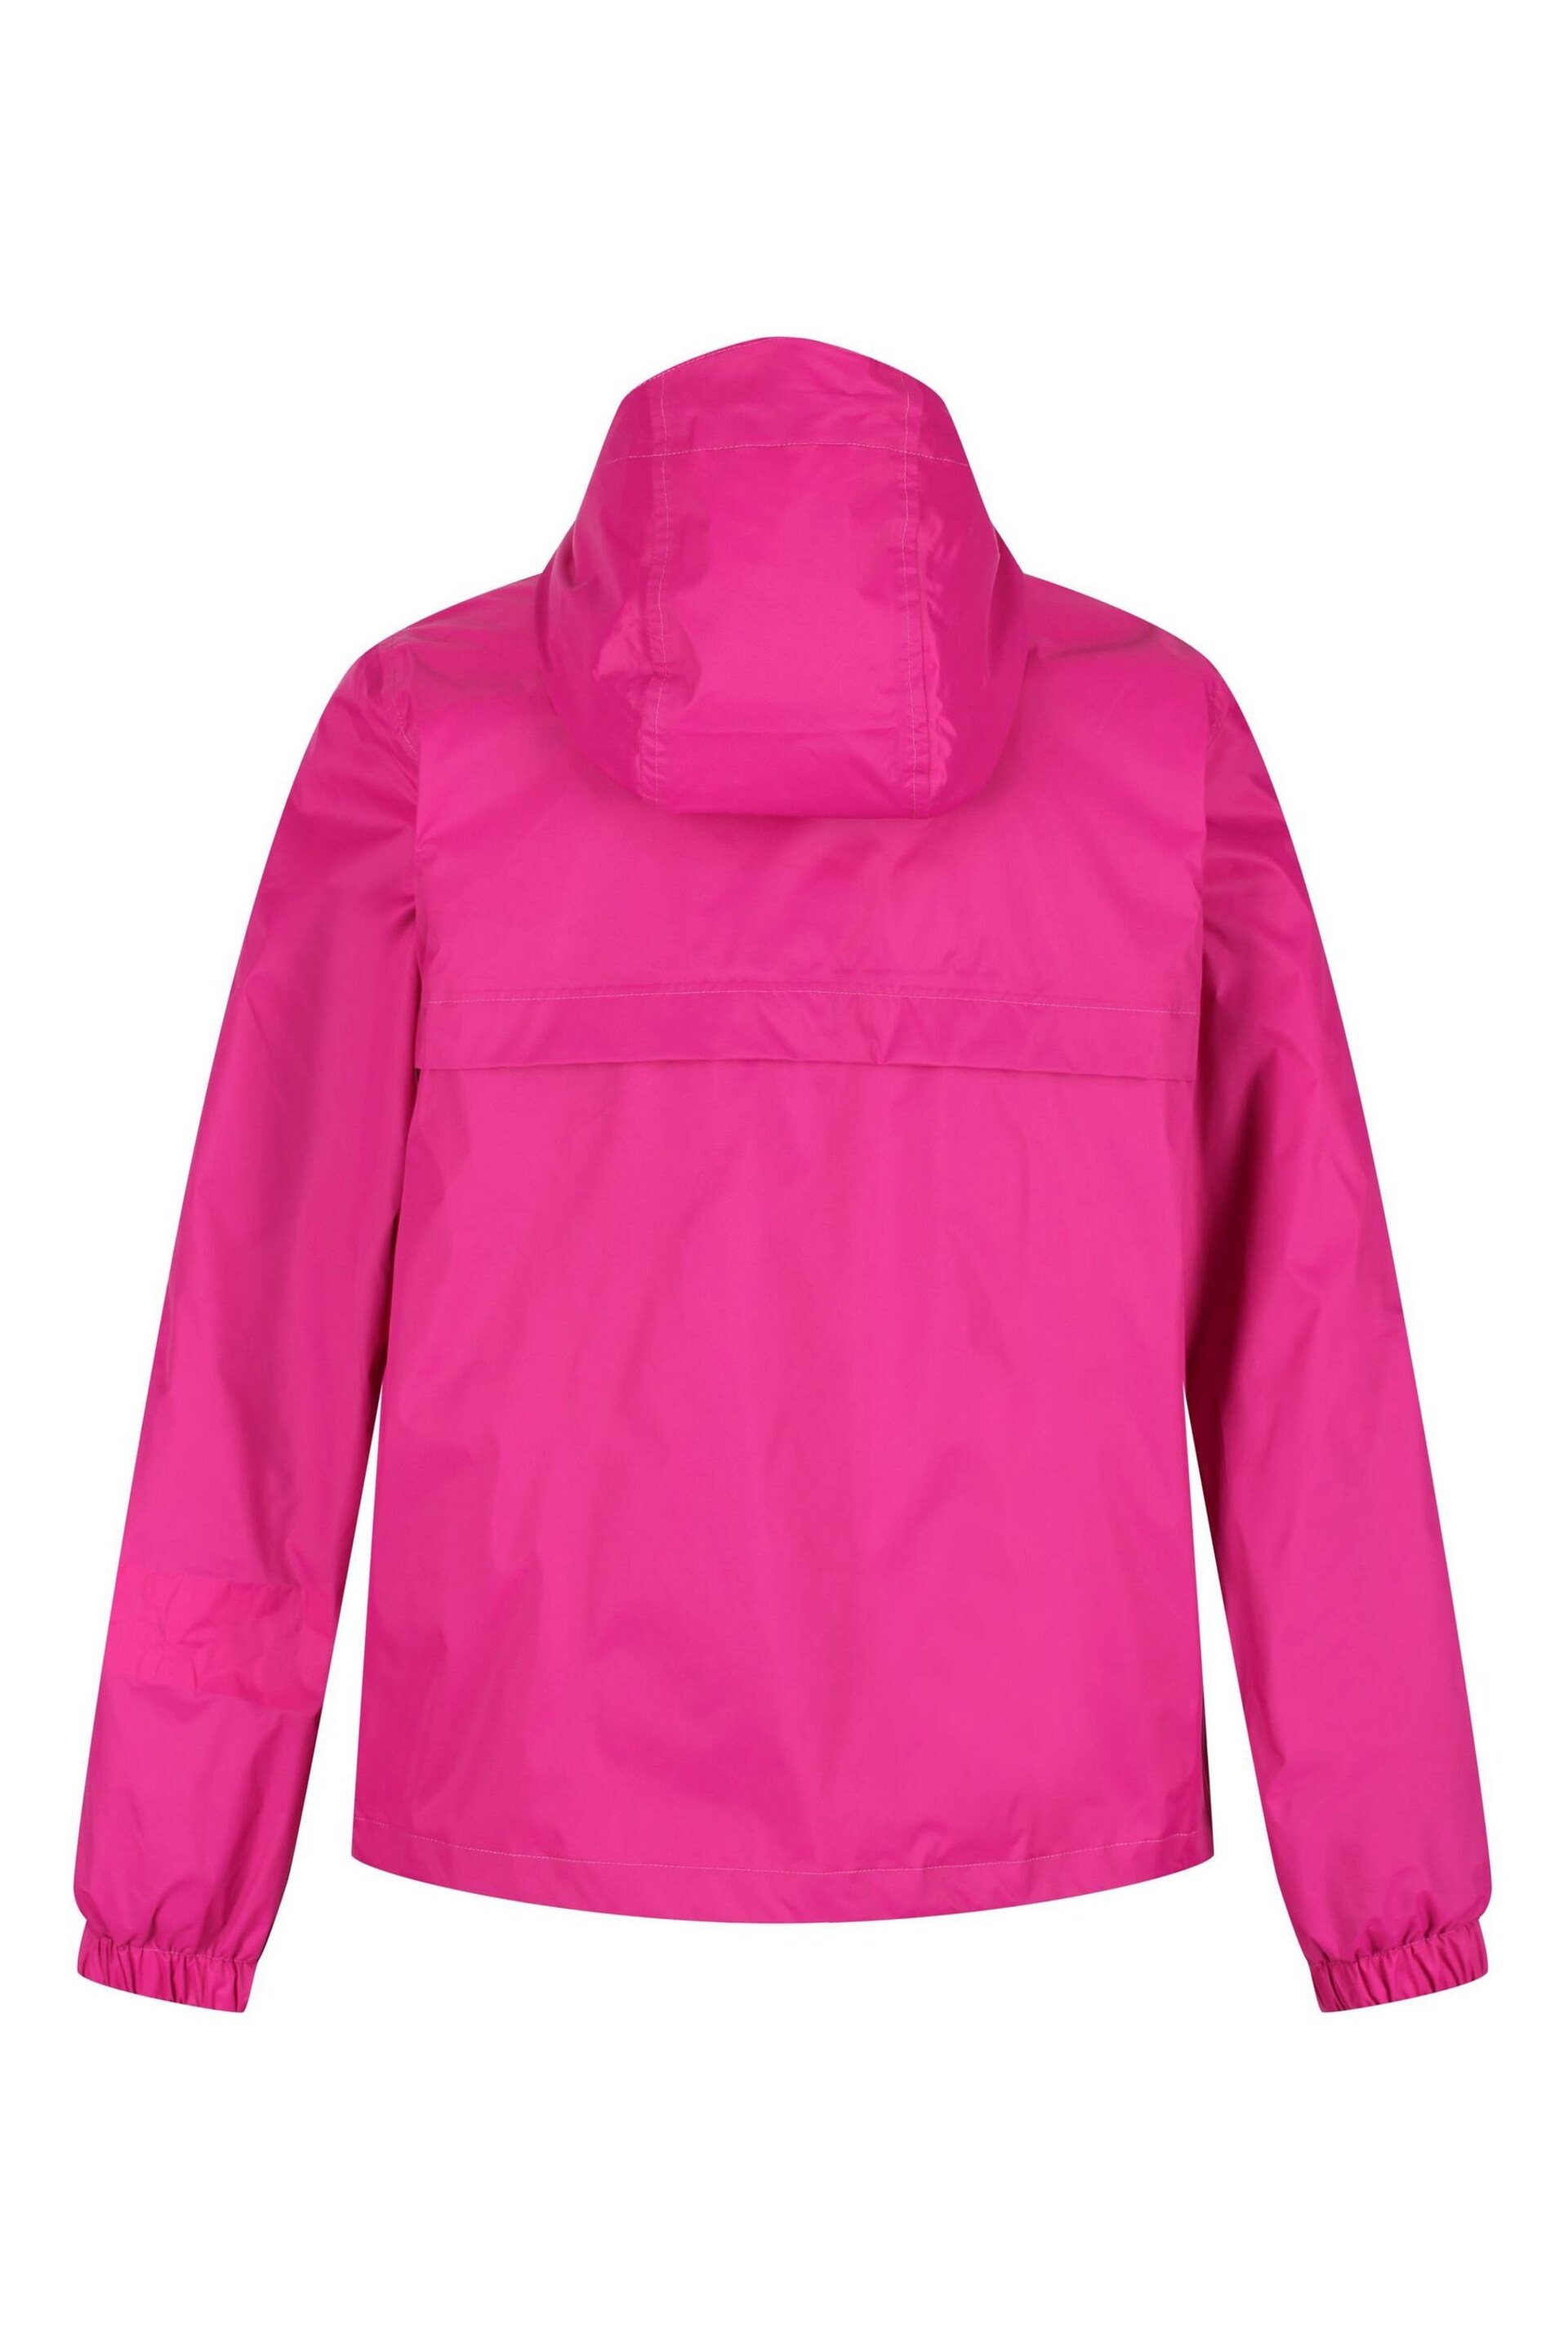 Regatta Pink Lalita Waterproof Jacket - Image 8 of 10